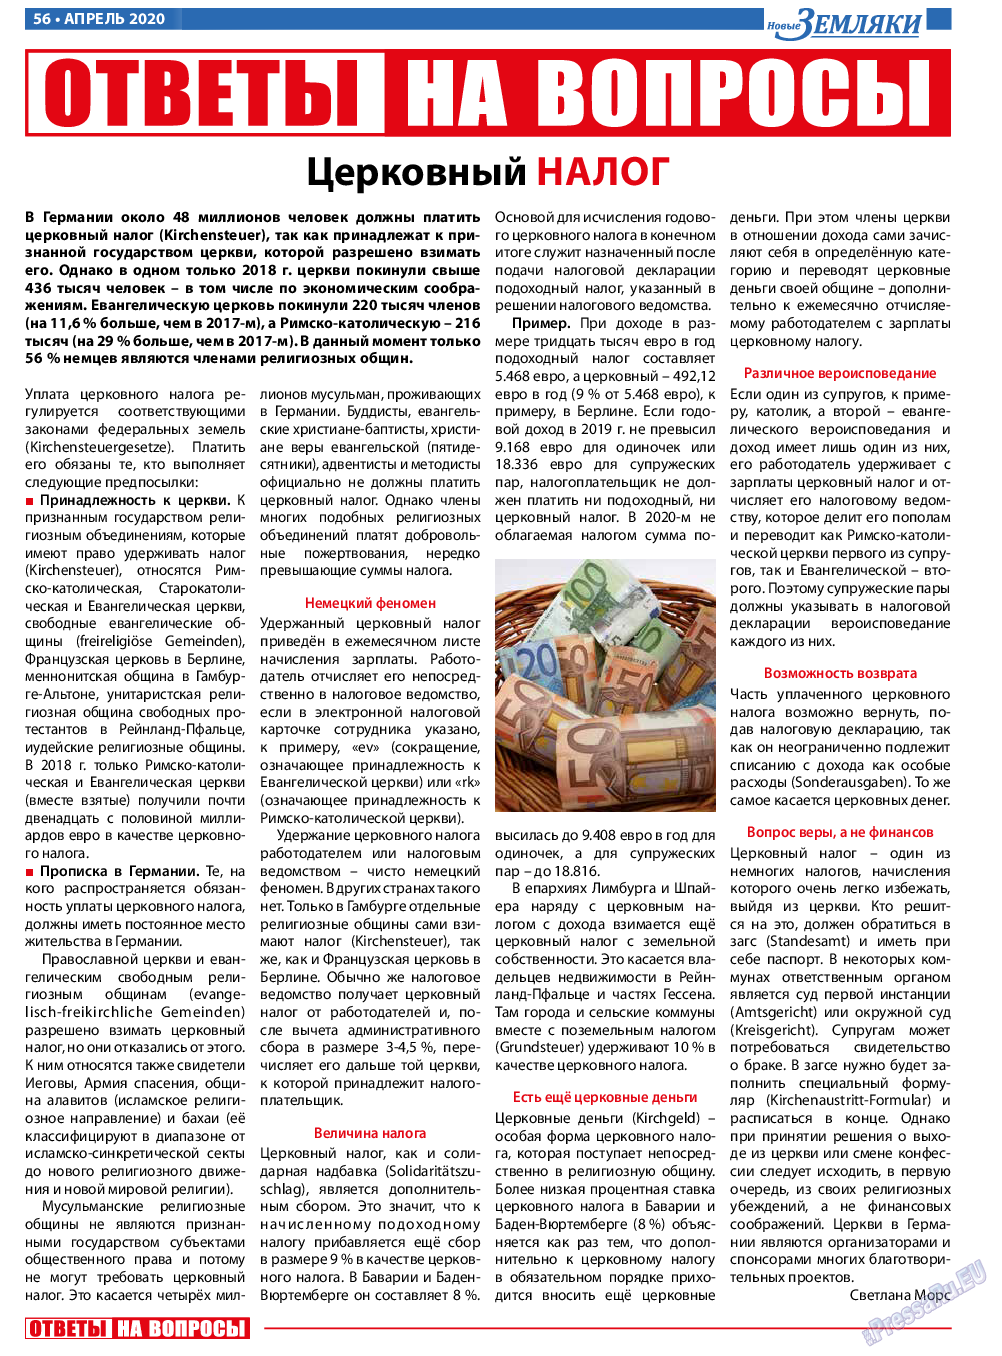 Новые Земляки (газета). 2020 год, номер 4, стр. 56